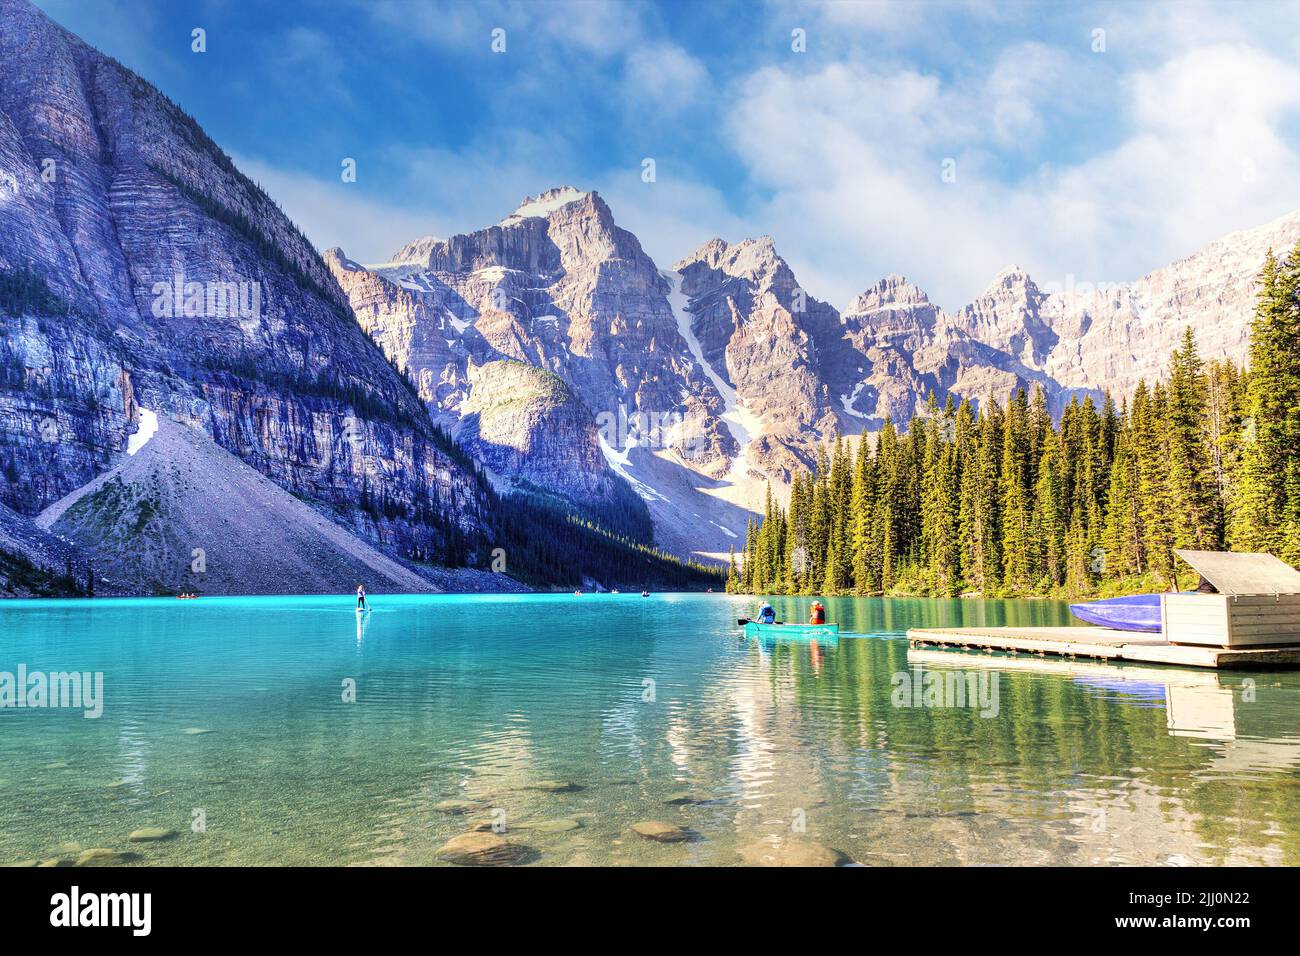 Visitantes inidentificables canotaje sus barcos en el lago Moraine de color turquesa en las Montañas Rocosas Canadienses del Parque Nacional Banff cerca del Lago Louise. El va Foto de stock